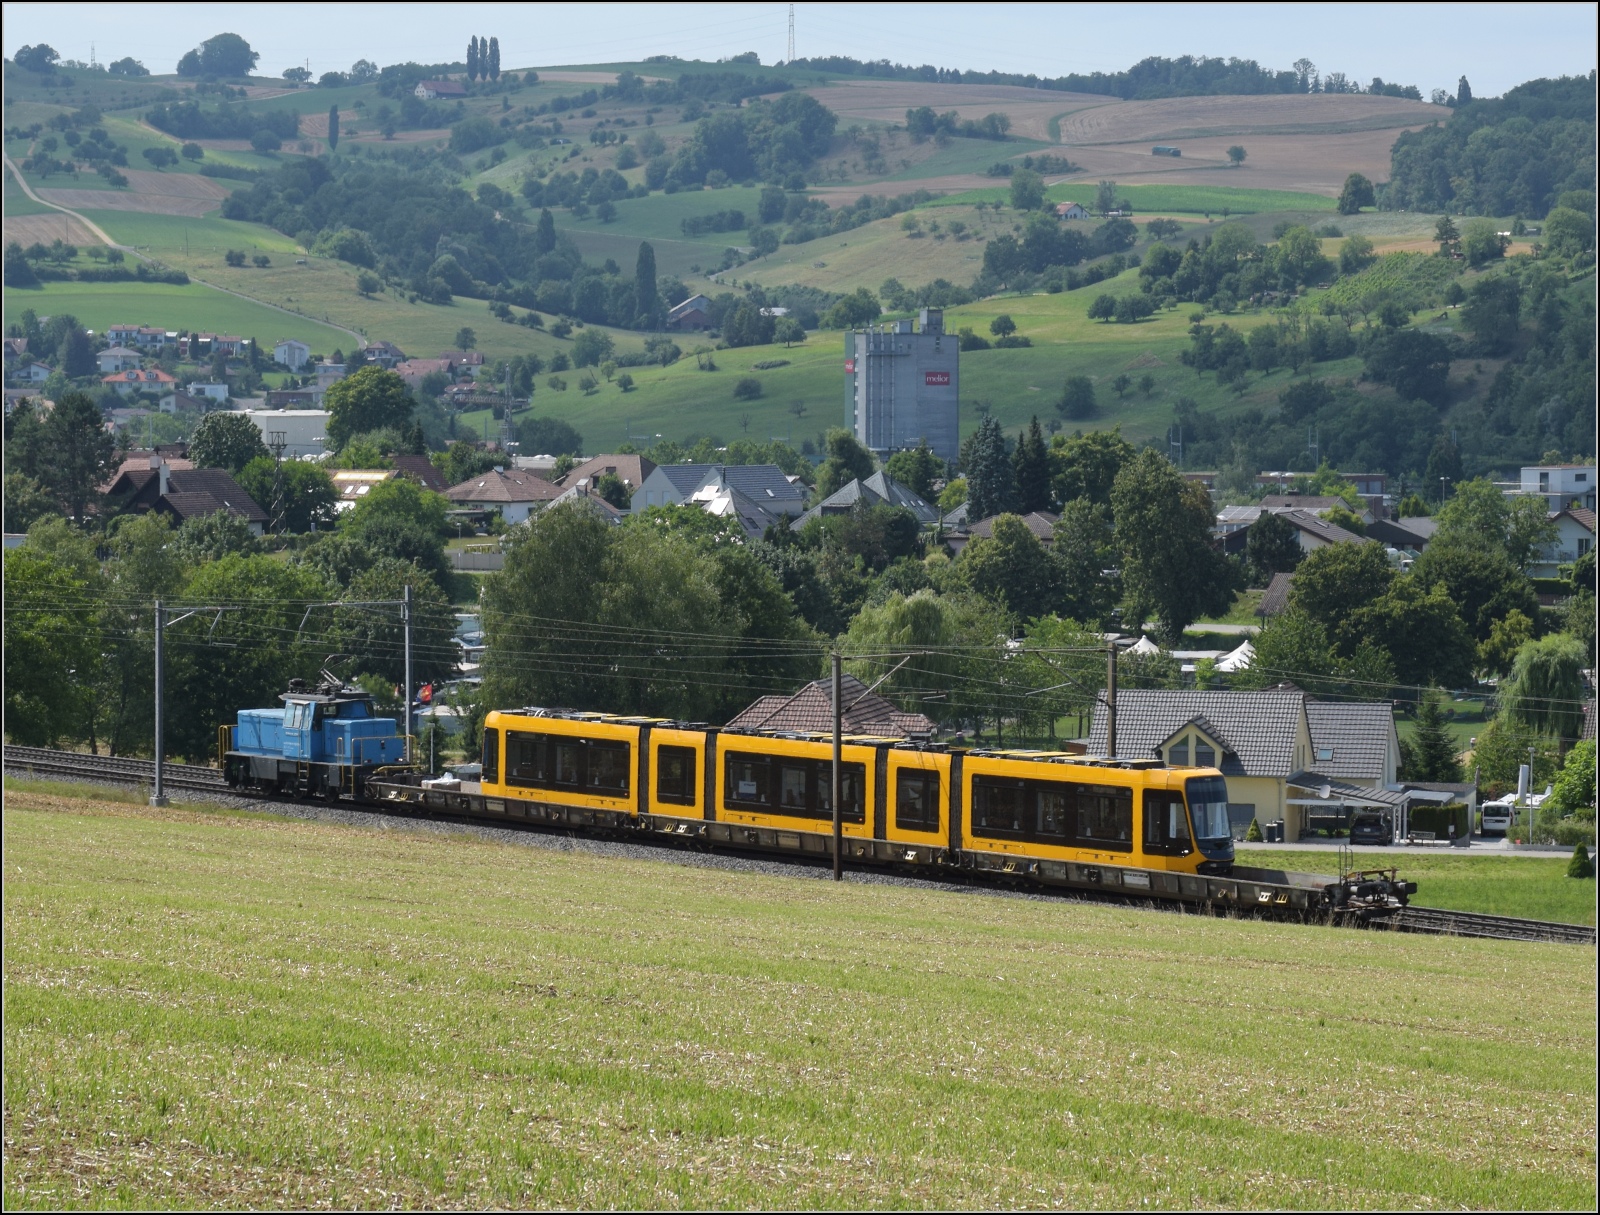 Neuheiten. 

Die Stadler-Werkslok Eem 936 131 liefert eine neue TINA-Strassenbahn nach Darmstadt aus. Letztes Jahr auf der Innotrans ausgestellt, jetzt auf dem Weg zum Kunden in Frick, Juli 2023. 